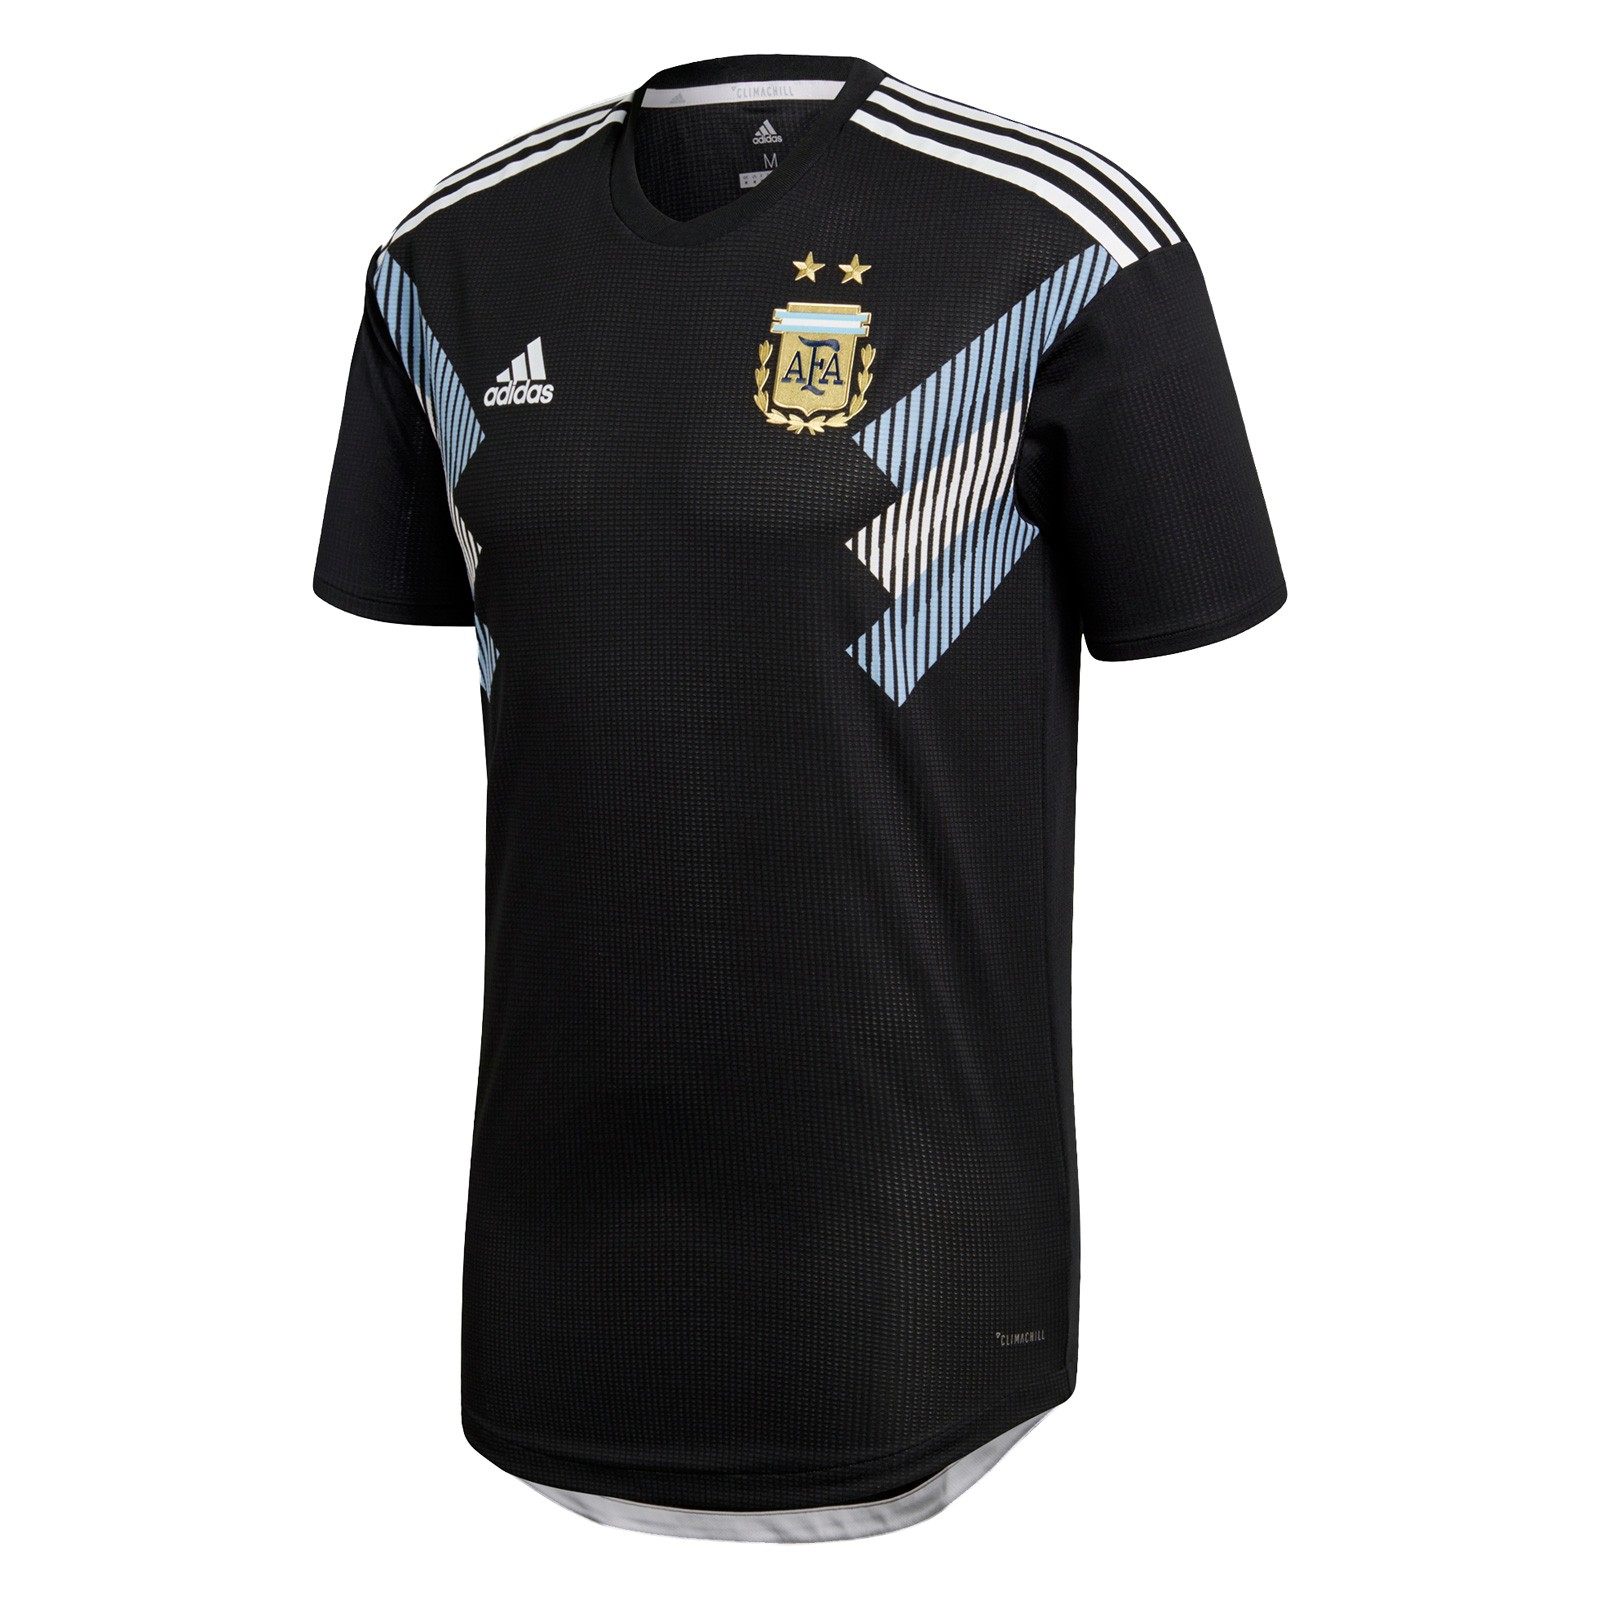 阿根廷客场球衣_阿根廷国家队客场球衣_世界杯阿根廷客场球衣